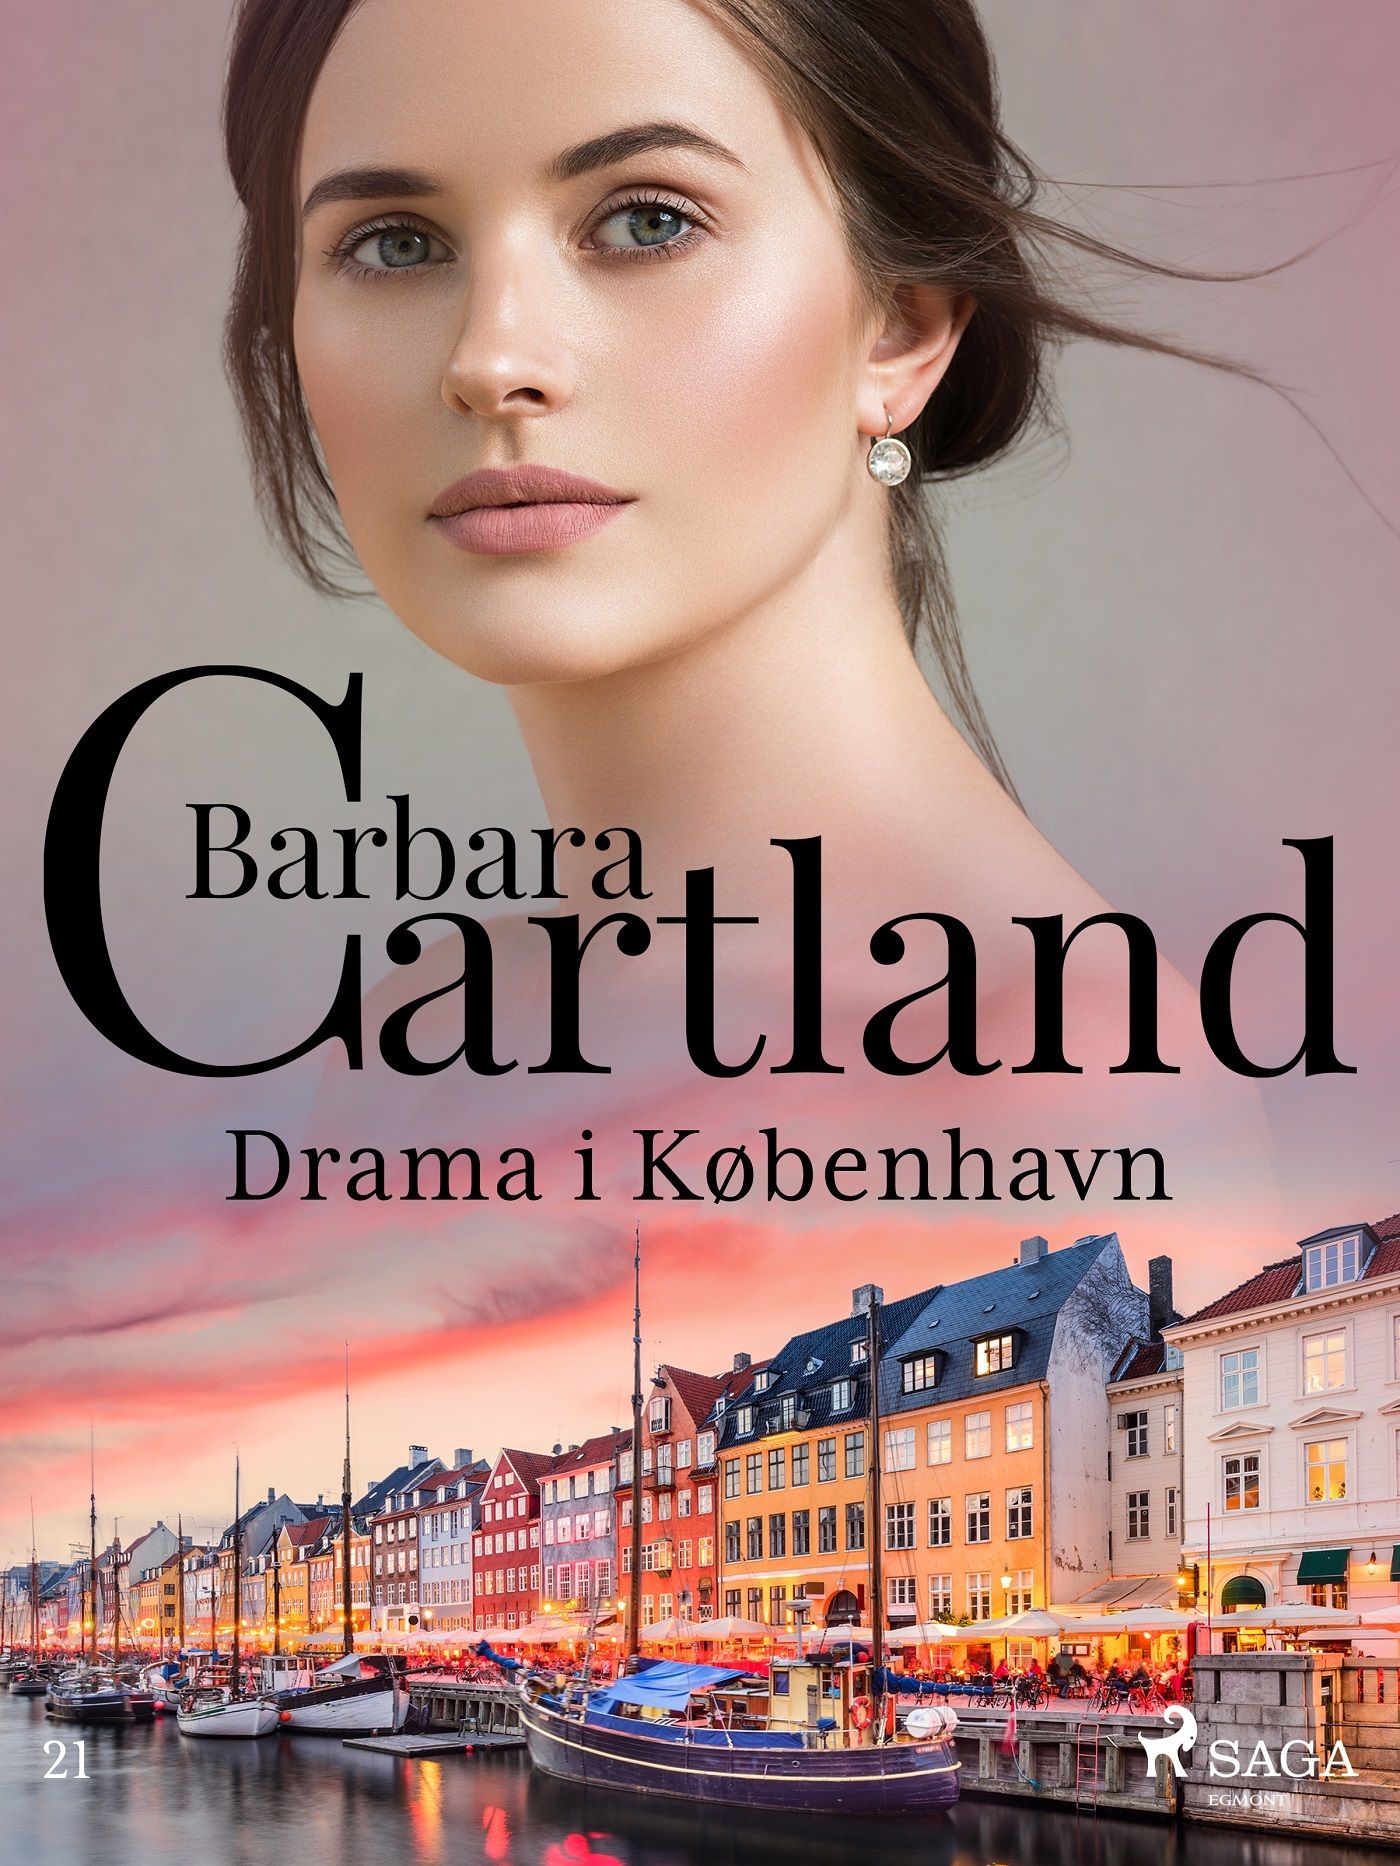 Drama i København, e-bog af Barbara Cartland